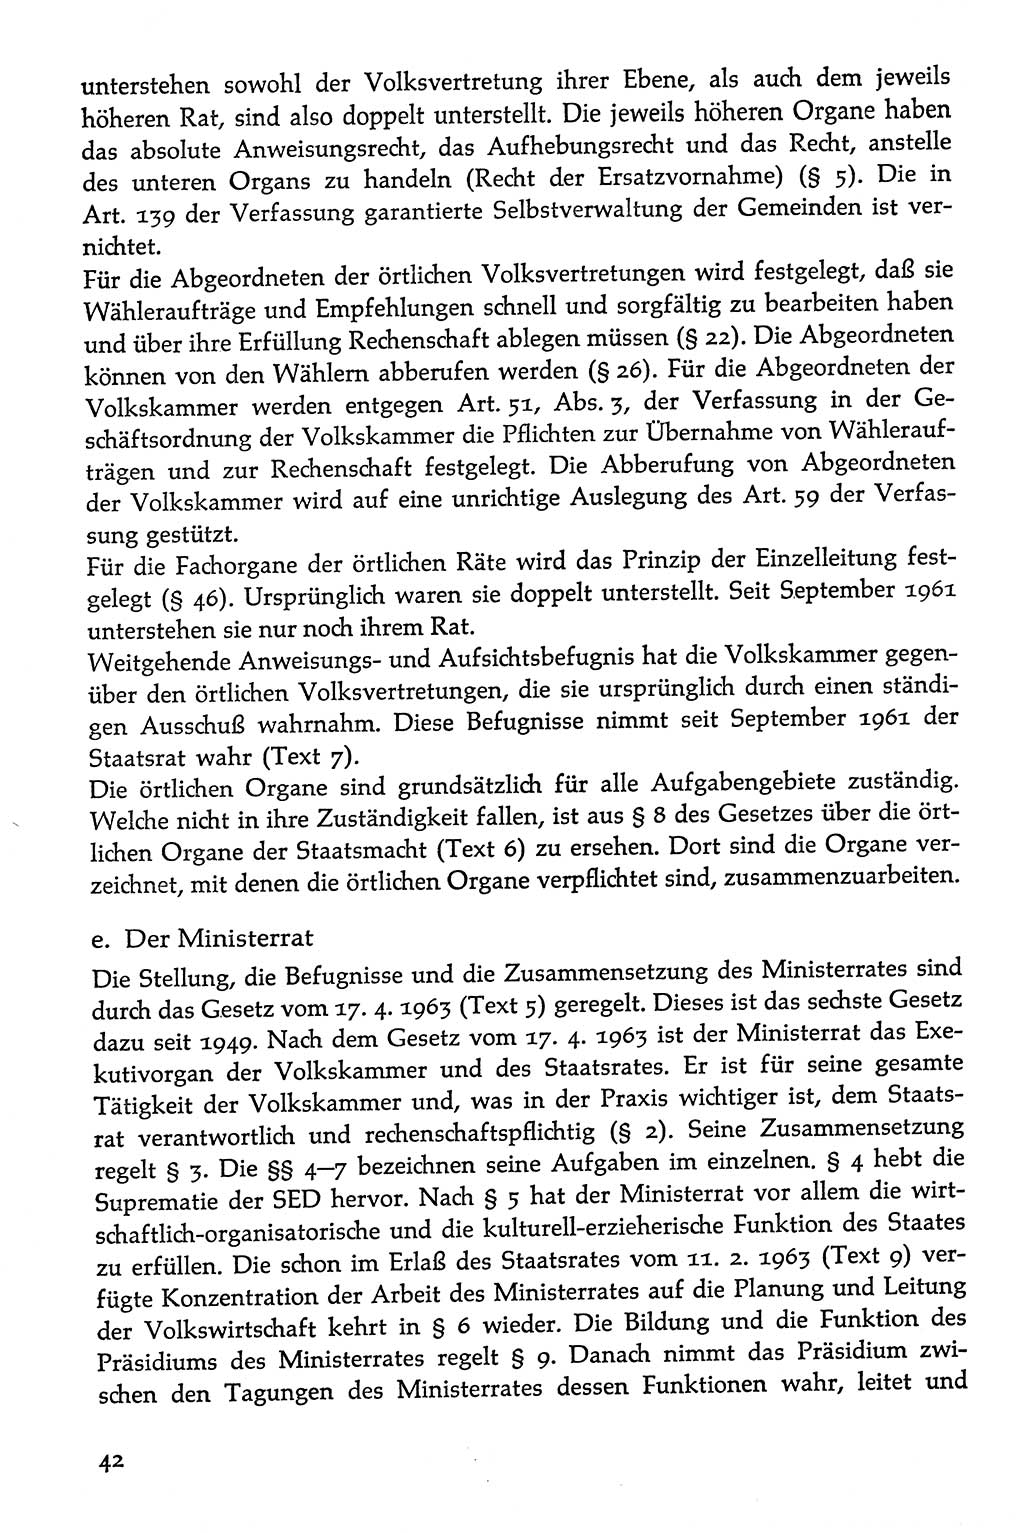 Volksdemokratische Ordnung in Mitteldeutschland [Deutsche Demokratische Republik (DDR)], Texte zur verfassungsrechtlichen Situation 1963, Seite 42 (Volksdem. Ordn. Md. DDR 1963, S. 42)